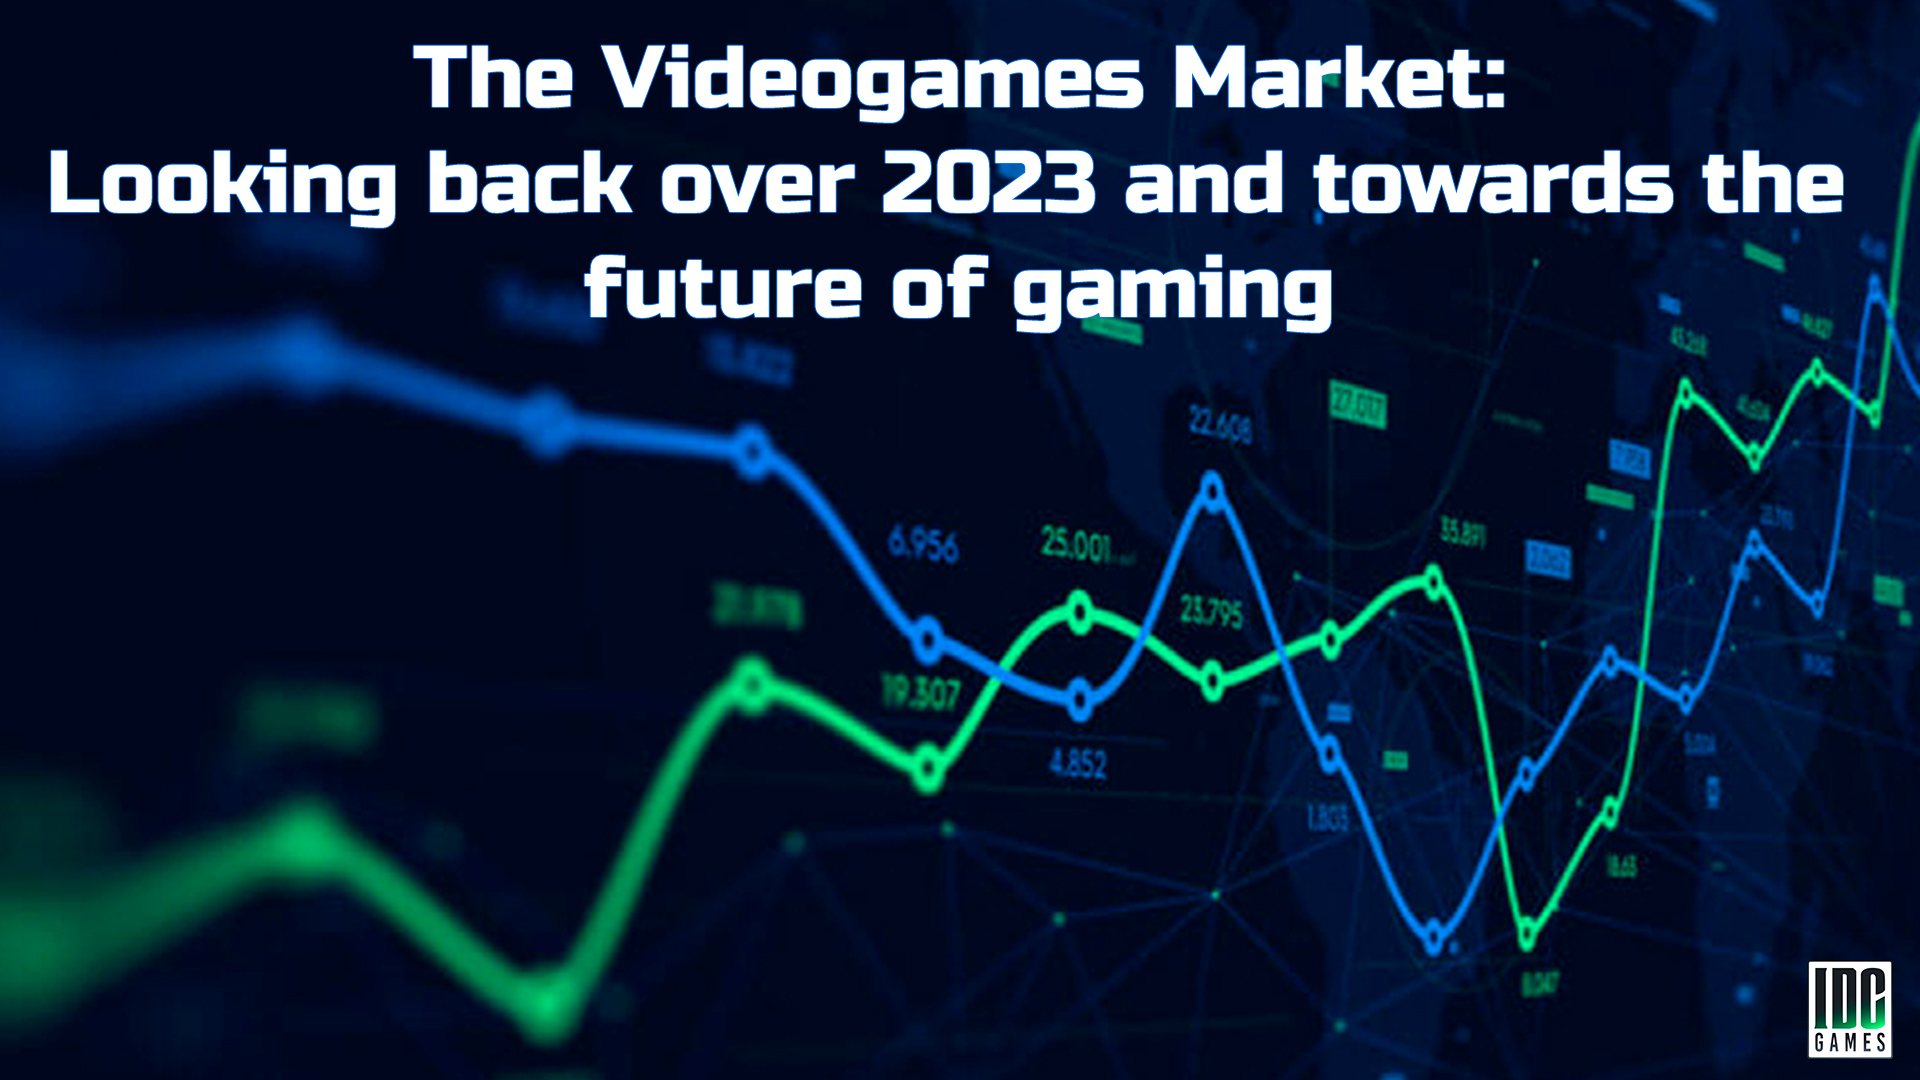 سوق ألعاب الفيديو: النظر إلى الوراء في عام 2023 وتوجه نحو مستقبل الألعاب